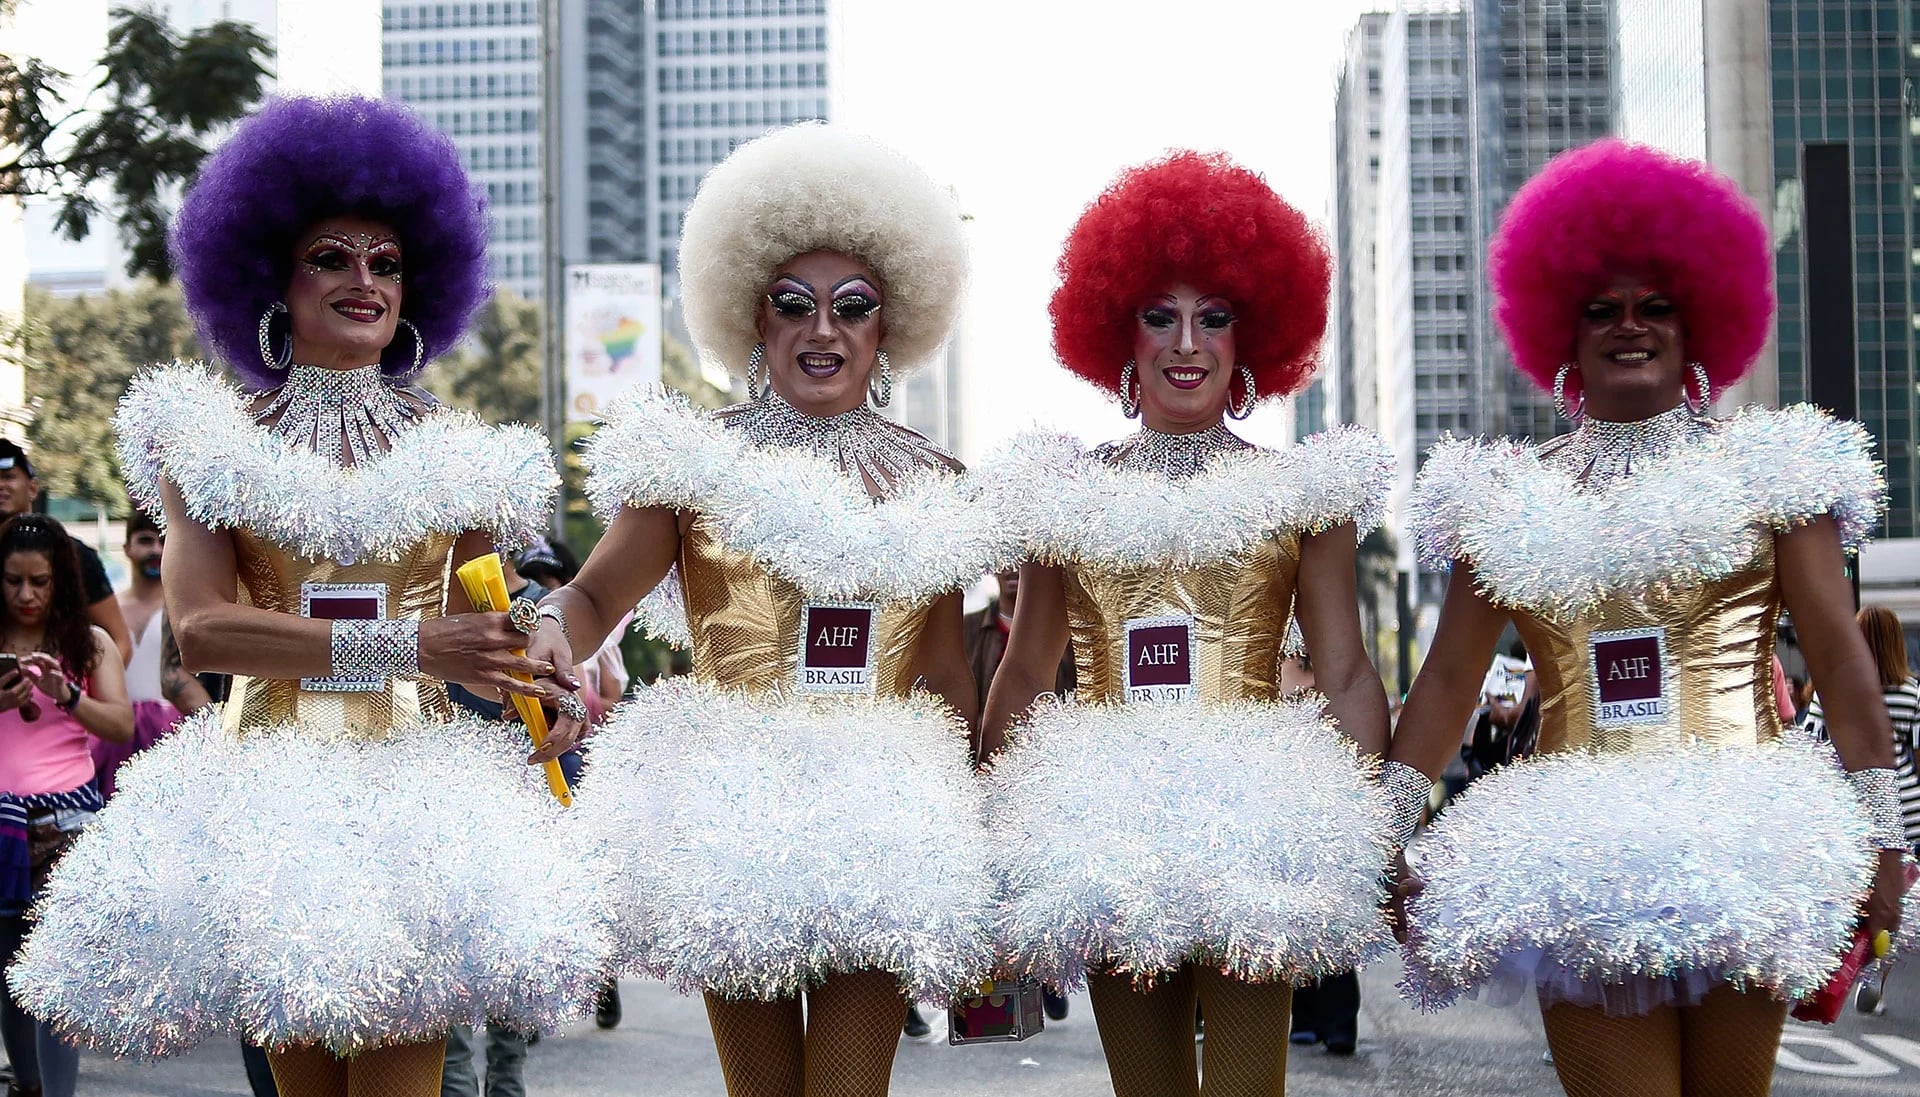 Colorido, atrevido y provocador, el desfile del orgullo gay moviliza además mucho dinero cada fin de semana de Corpus Christi en San Pablo